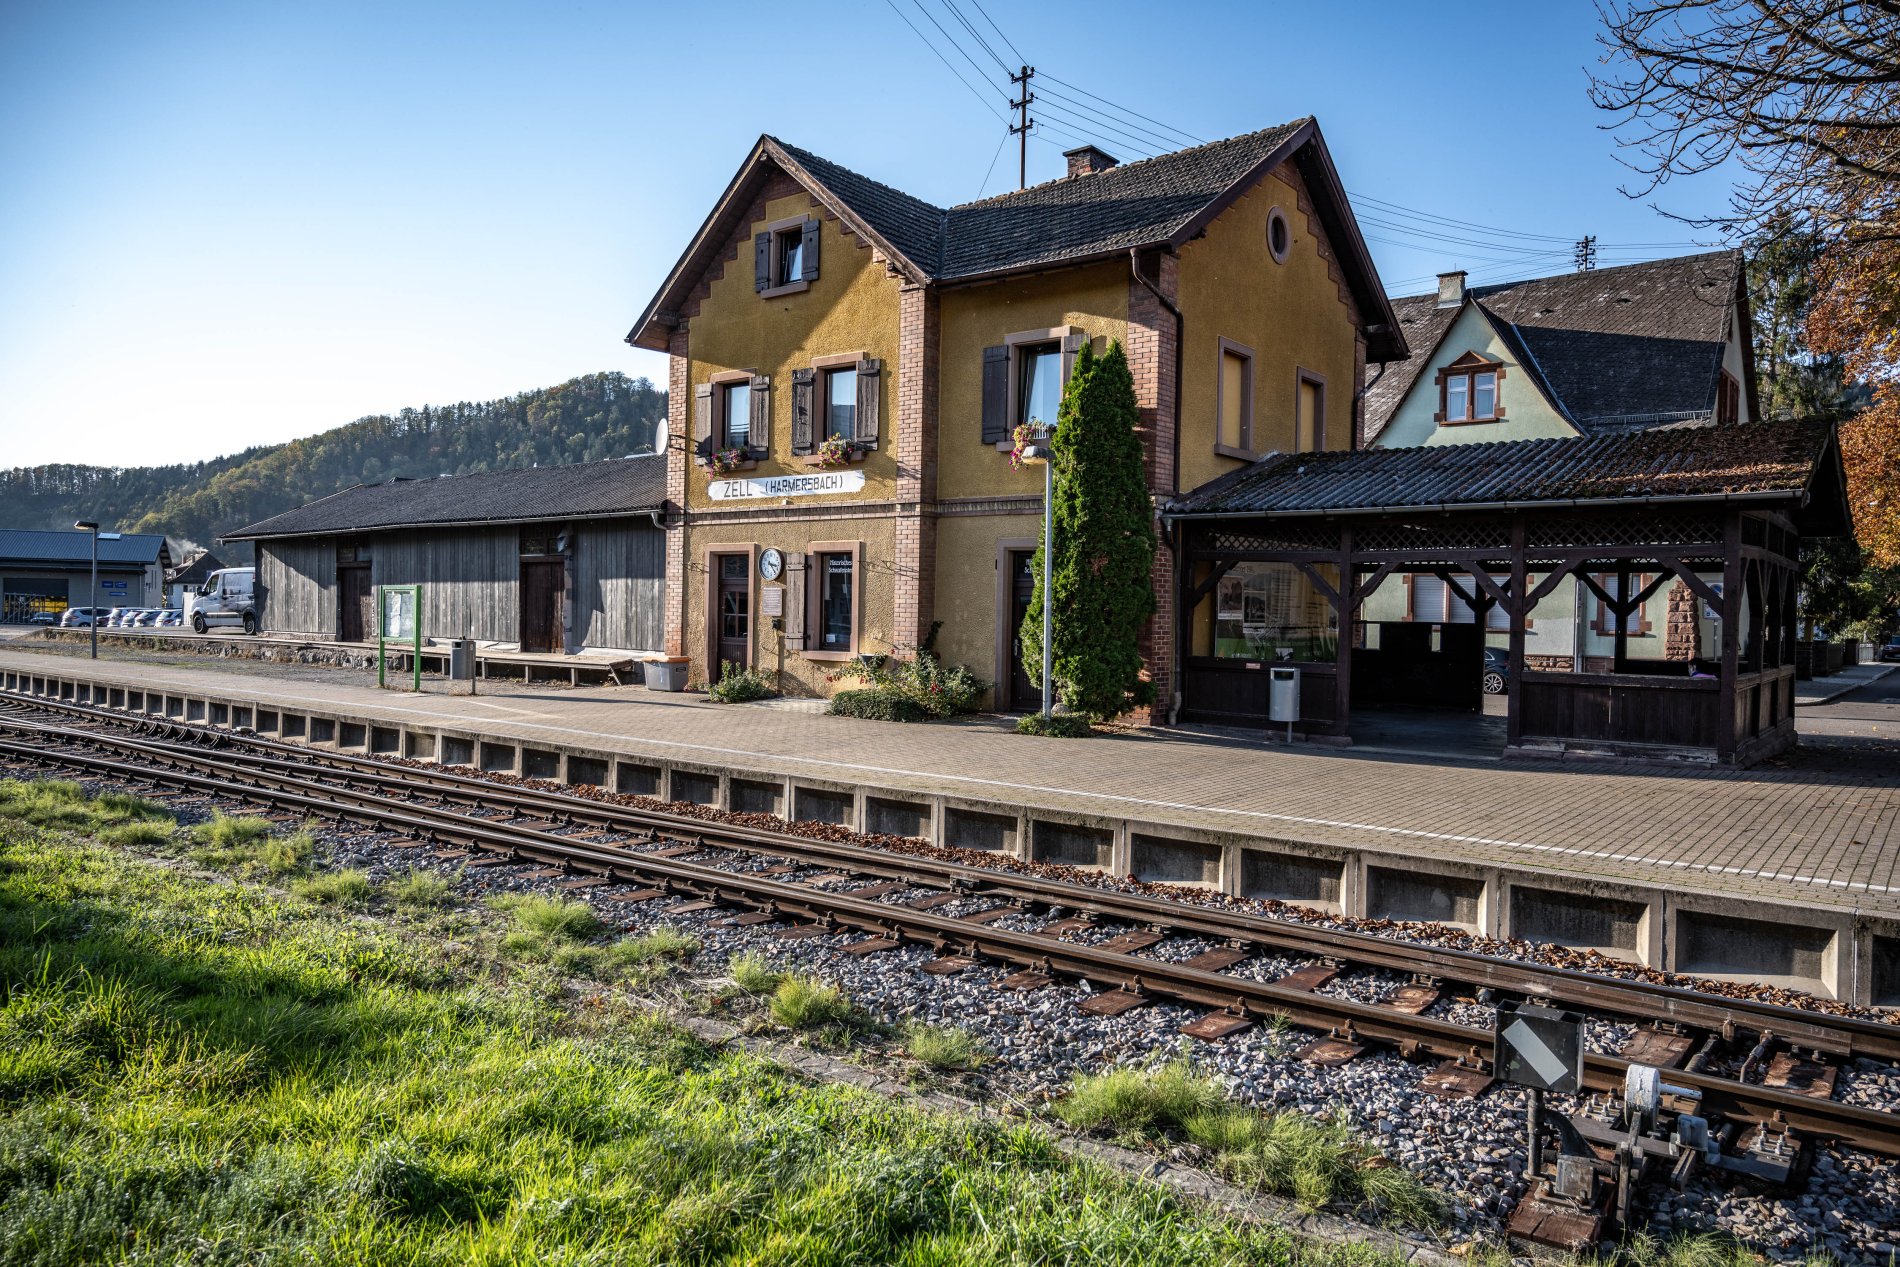 Bahnhof Zell am Harmersbach